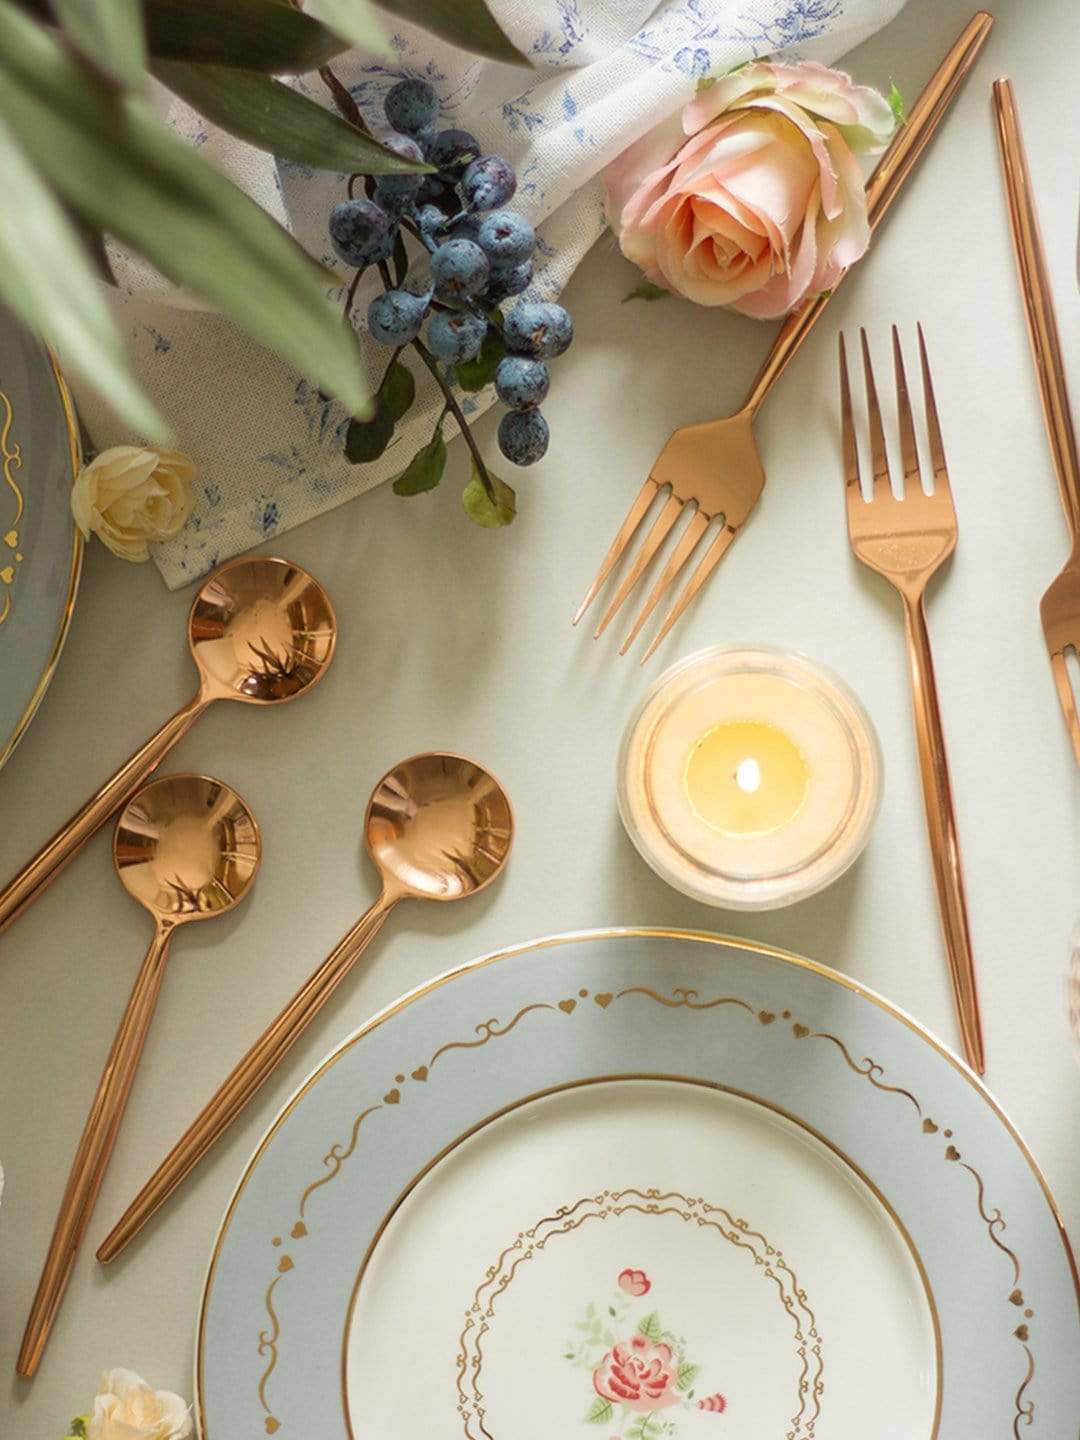 Perfect Kitchen Dessert Forks-Rose Gold-Set of 6